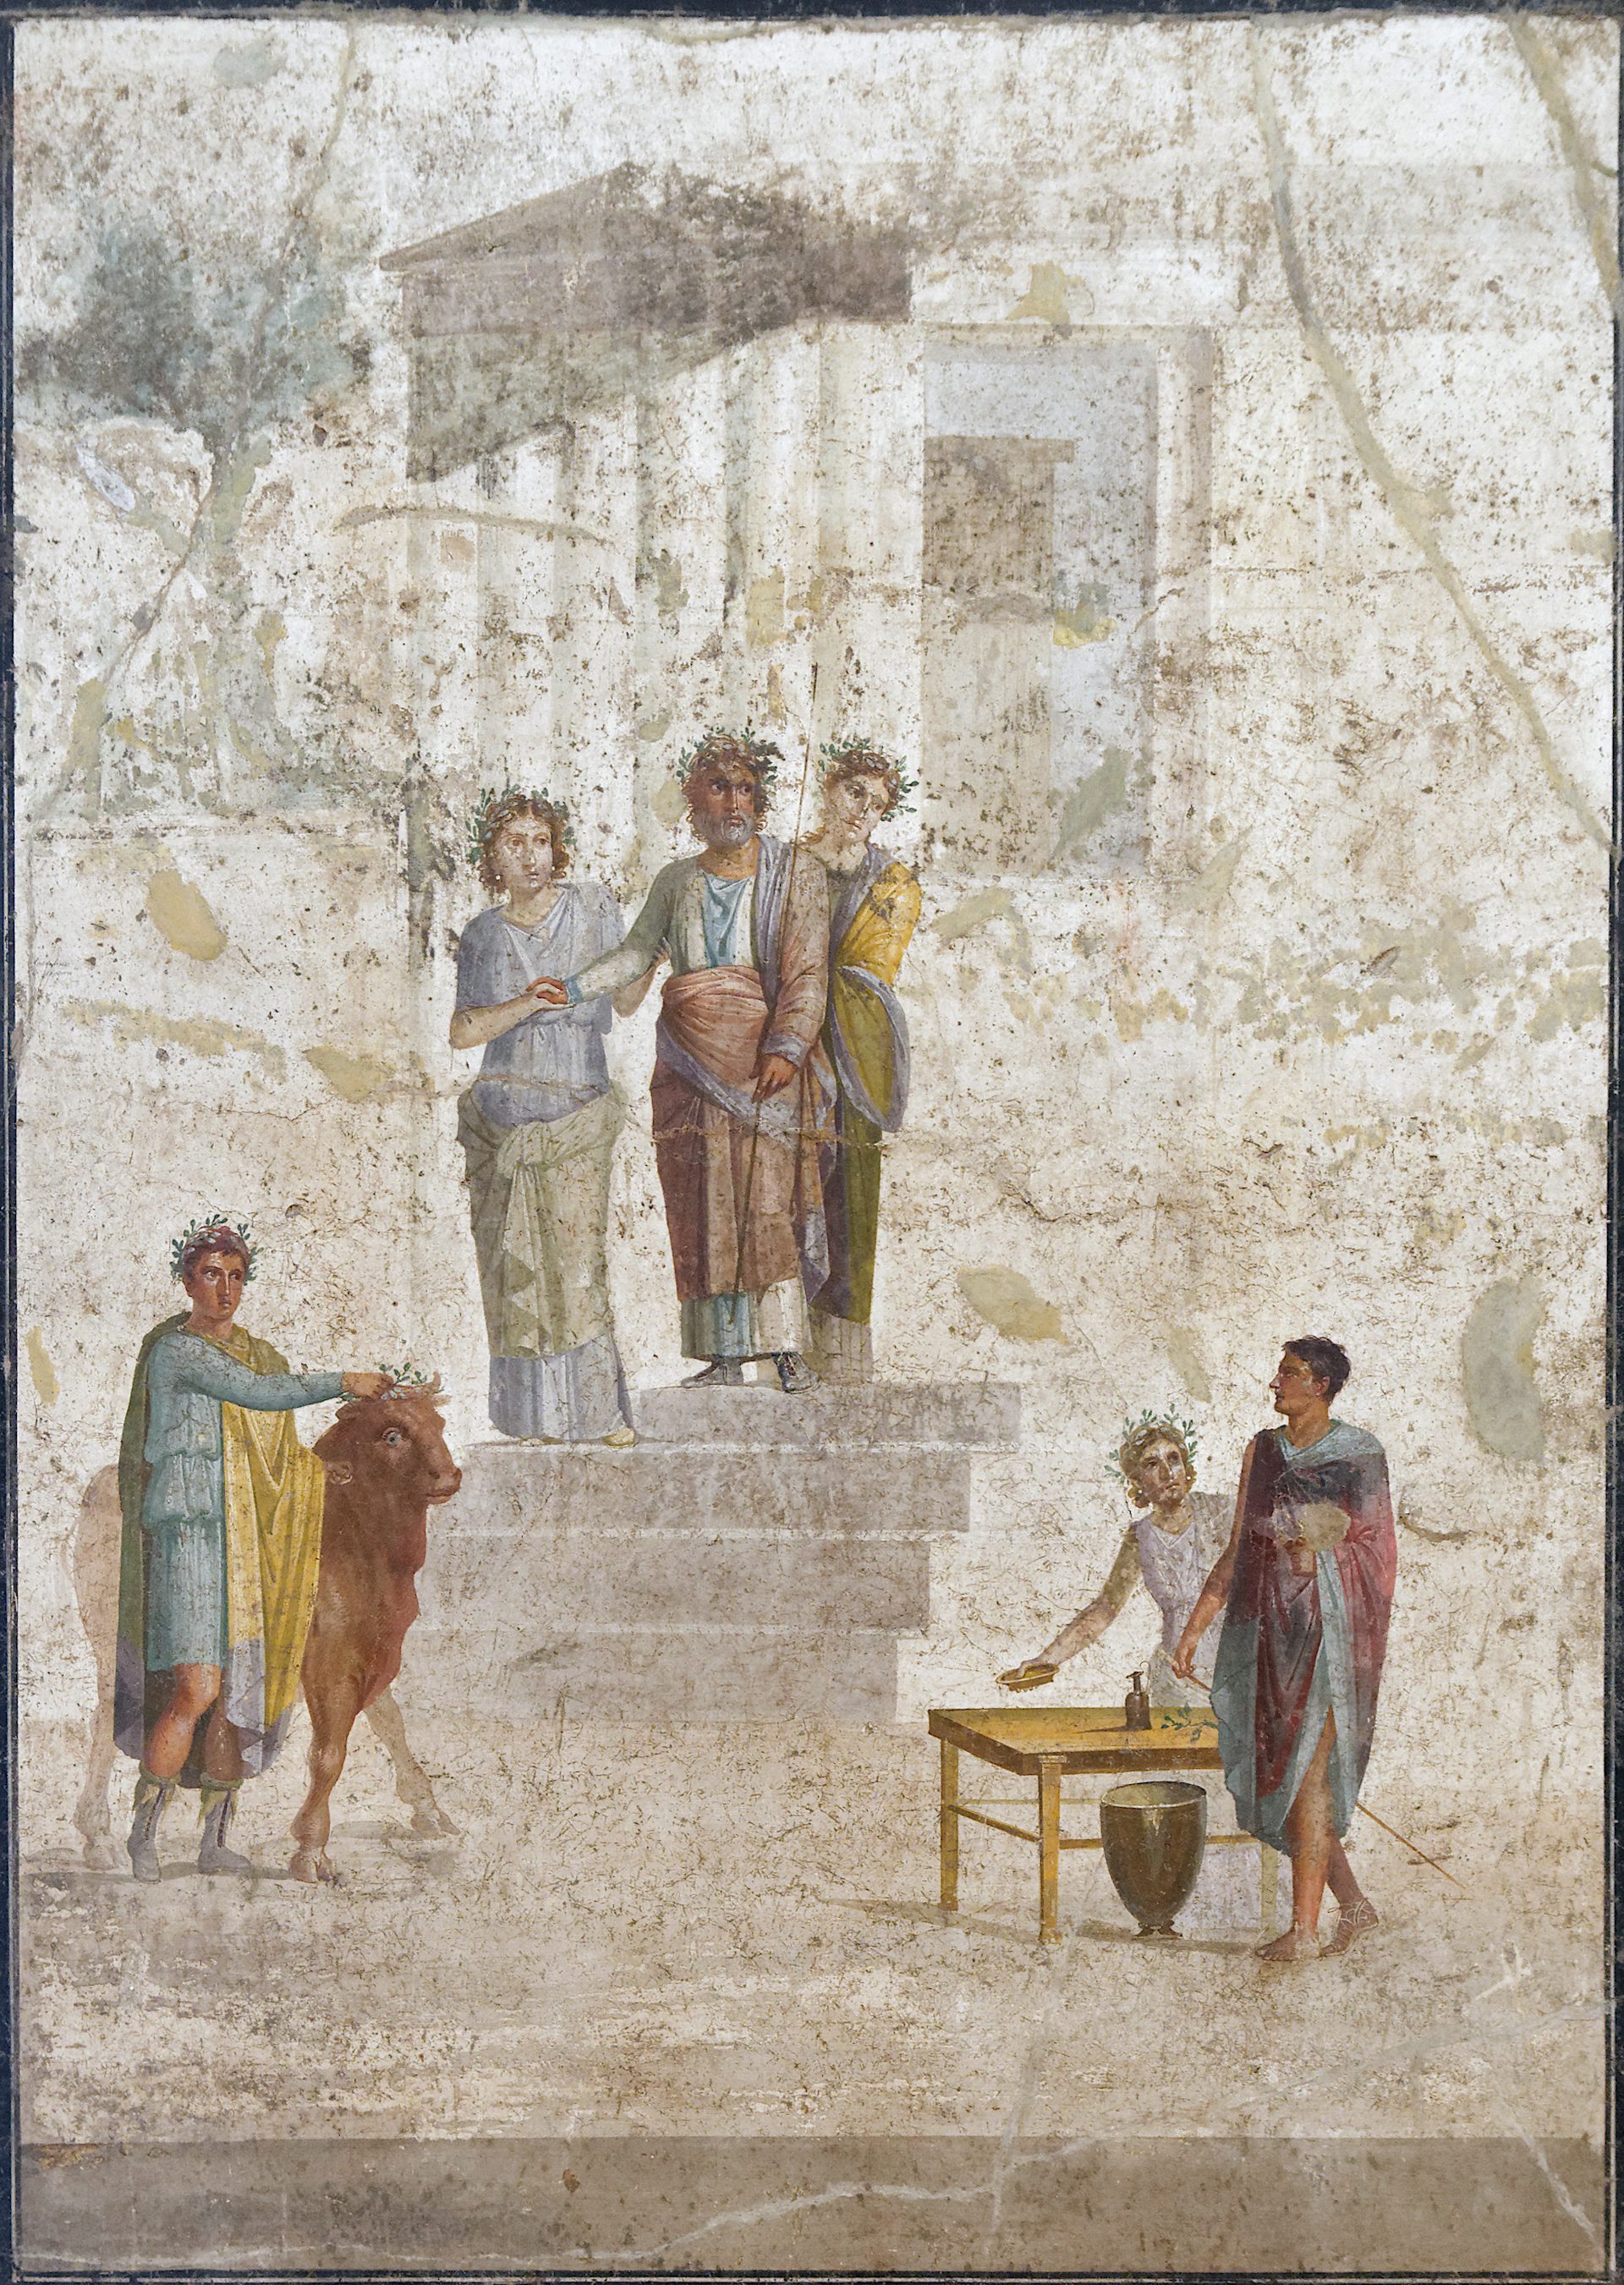 Pelias and Jason Fresco, Pompeii